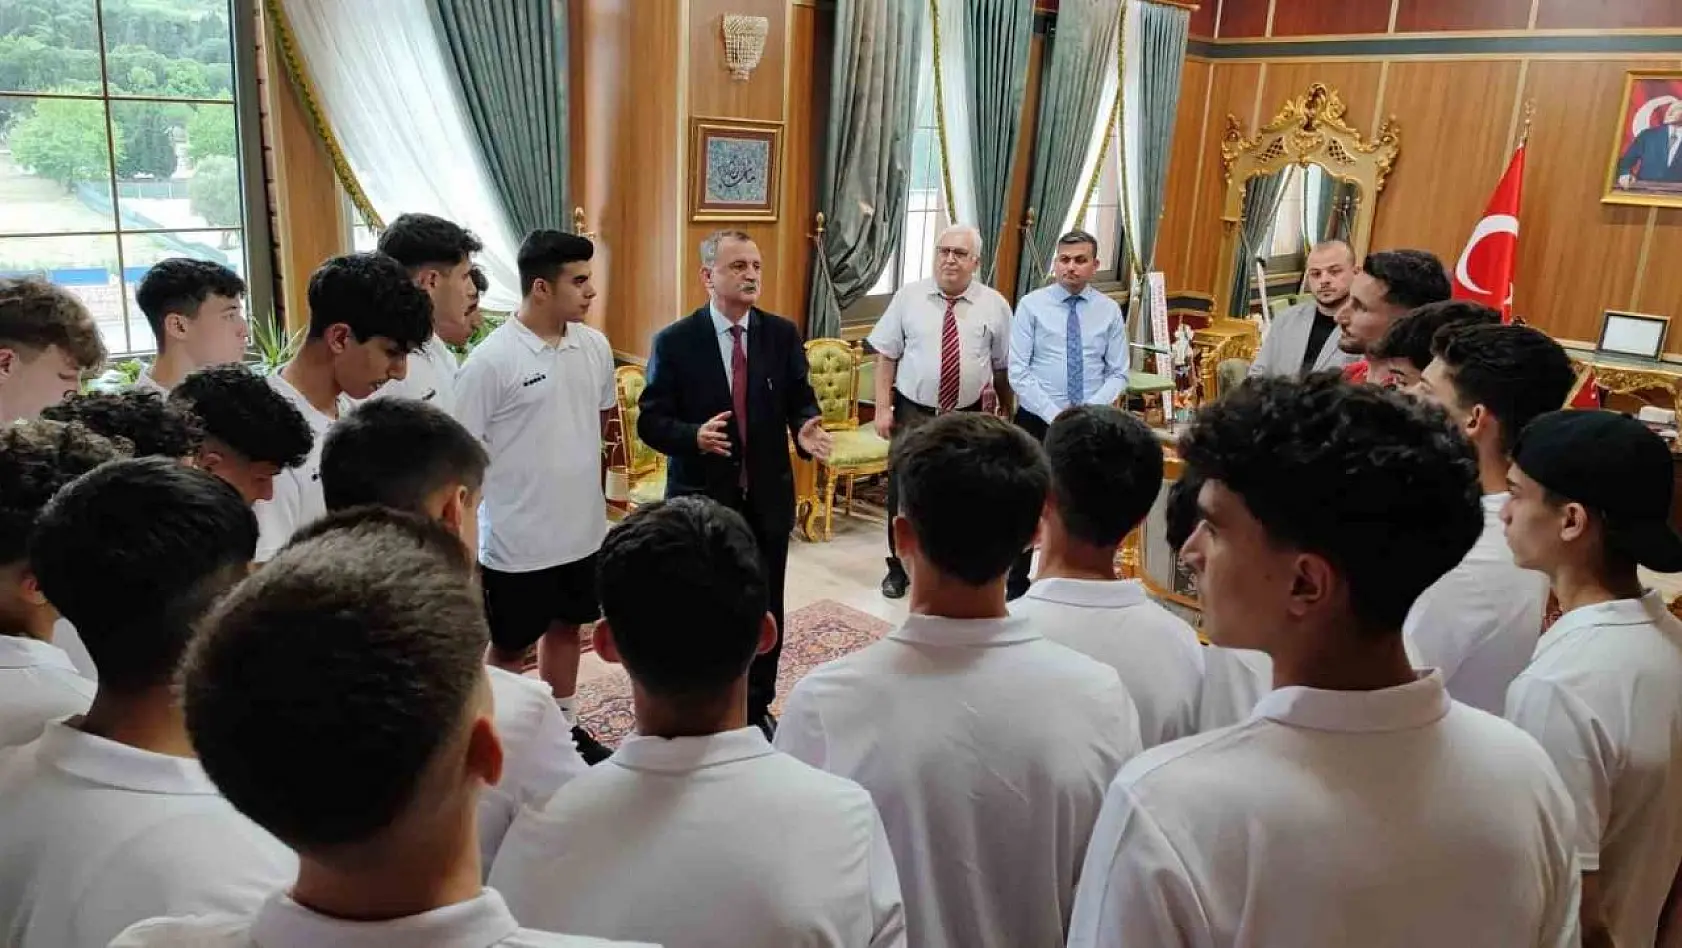 Başkan Balaban, Yunusemre'nin U16'larına başarılar diledi